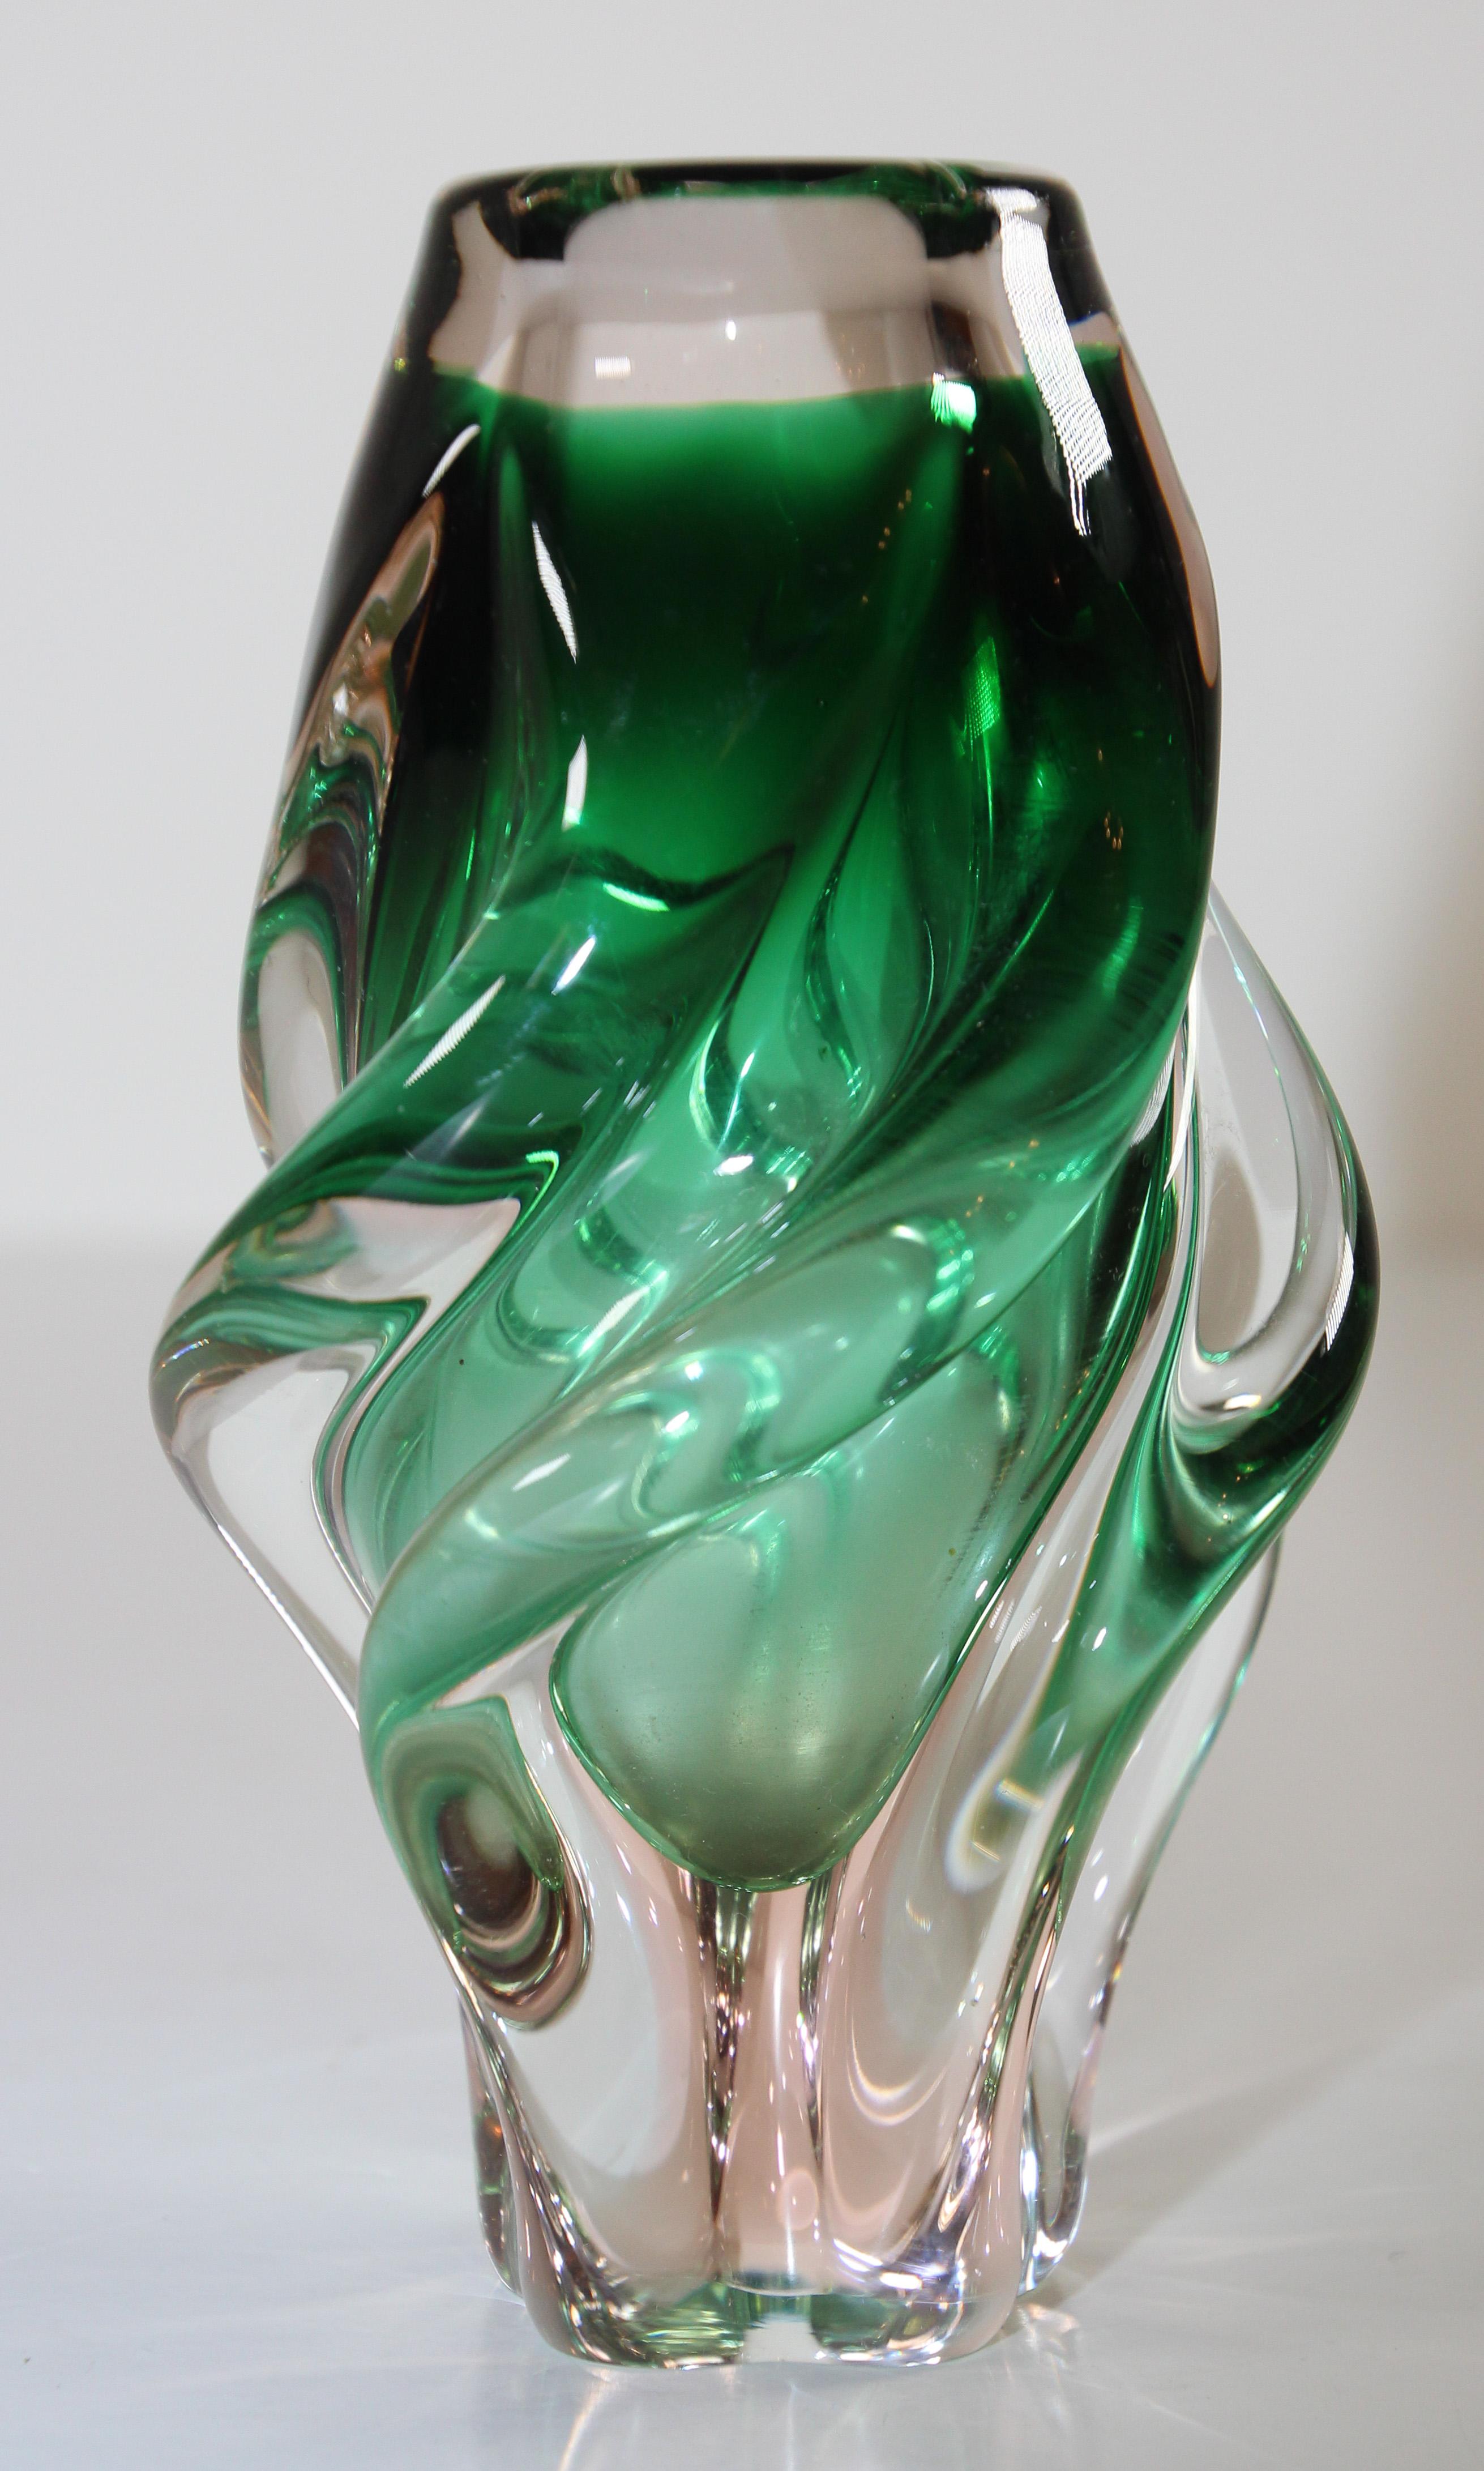 Vase aus mundgeblasenem Kunstglas im Muranostil in grüner, gedrehter Form.
Der talentierte Kunsthandwerker erlangt traditionelle Glasbläsertechniken aus Murano, Italien, wieder und verwendet Pigmente, um dieser Vase grüne Farbtöne zu